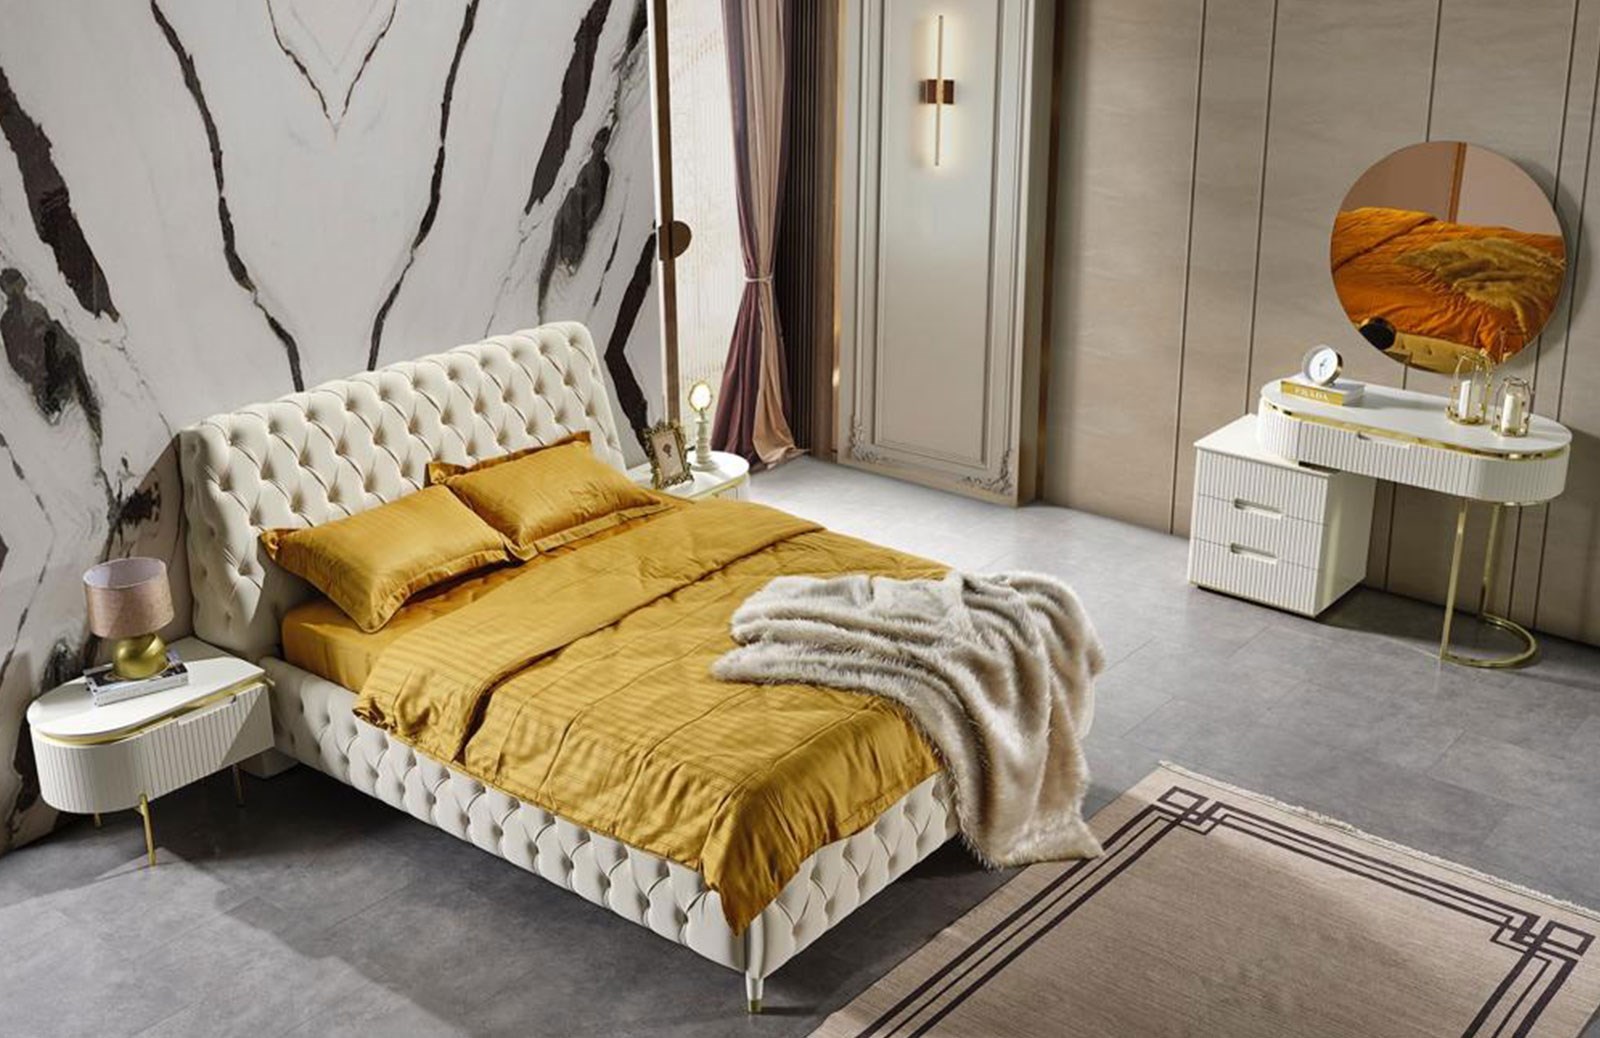 Perla Luxury Yatak Odası Takımı | Engince Mobilya